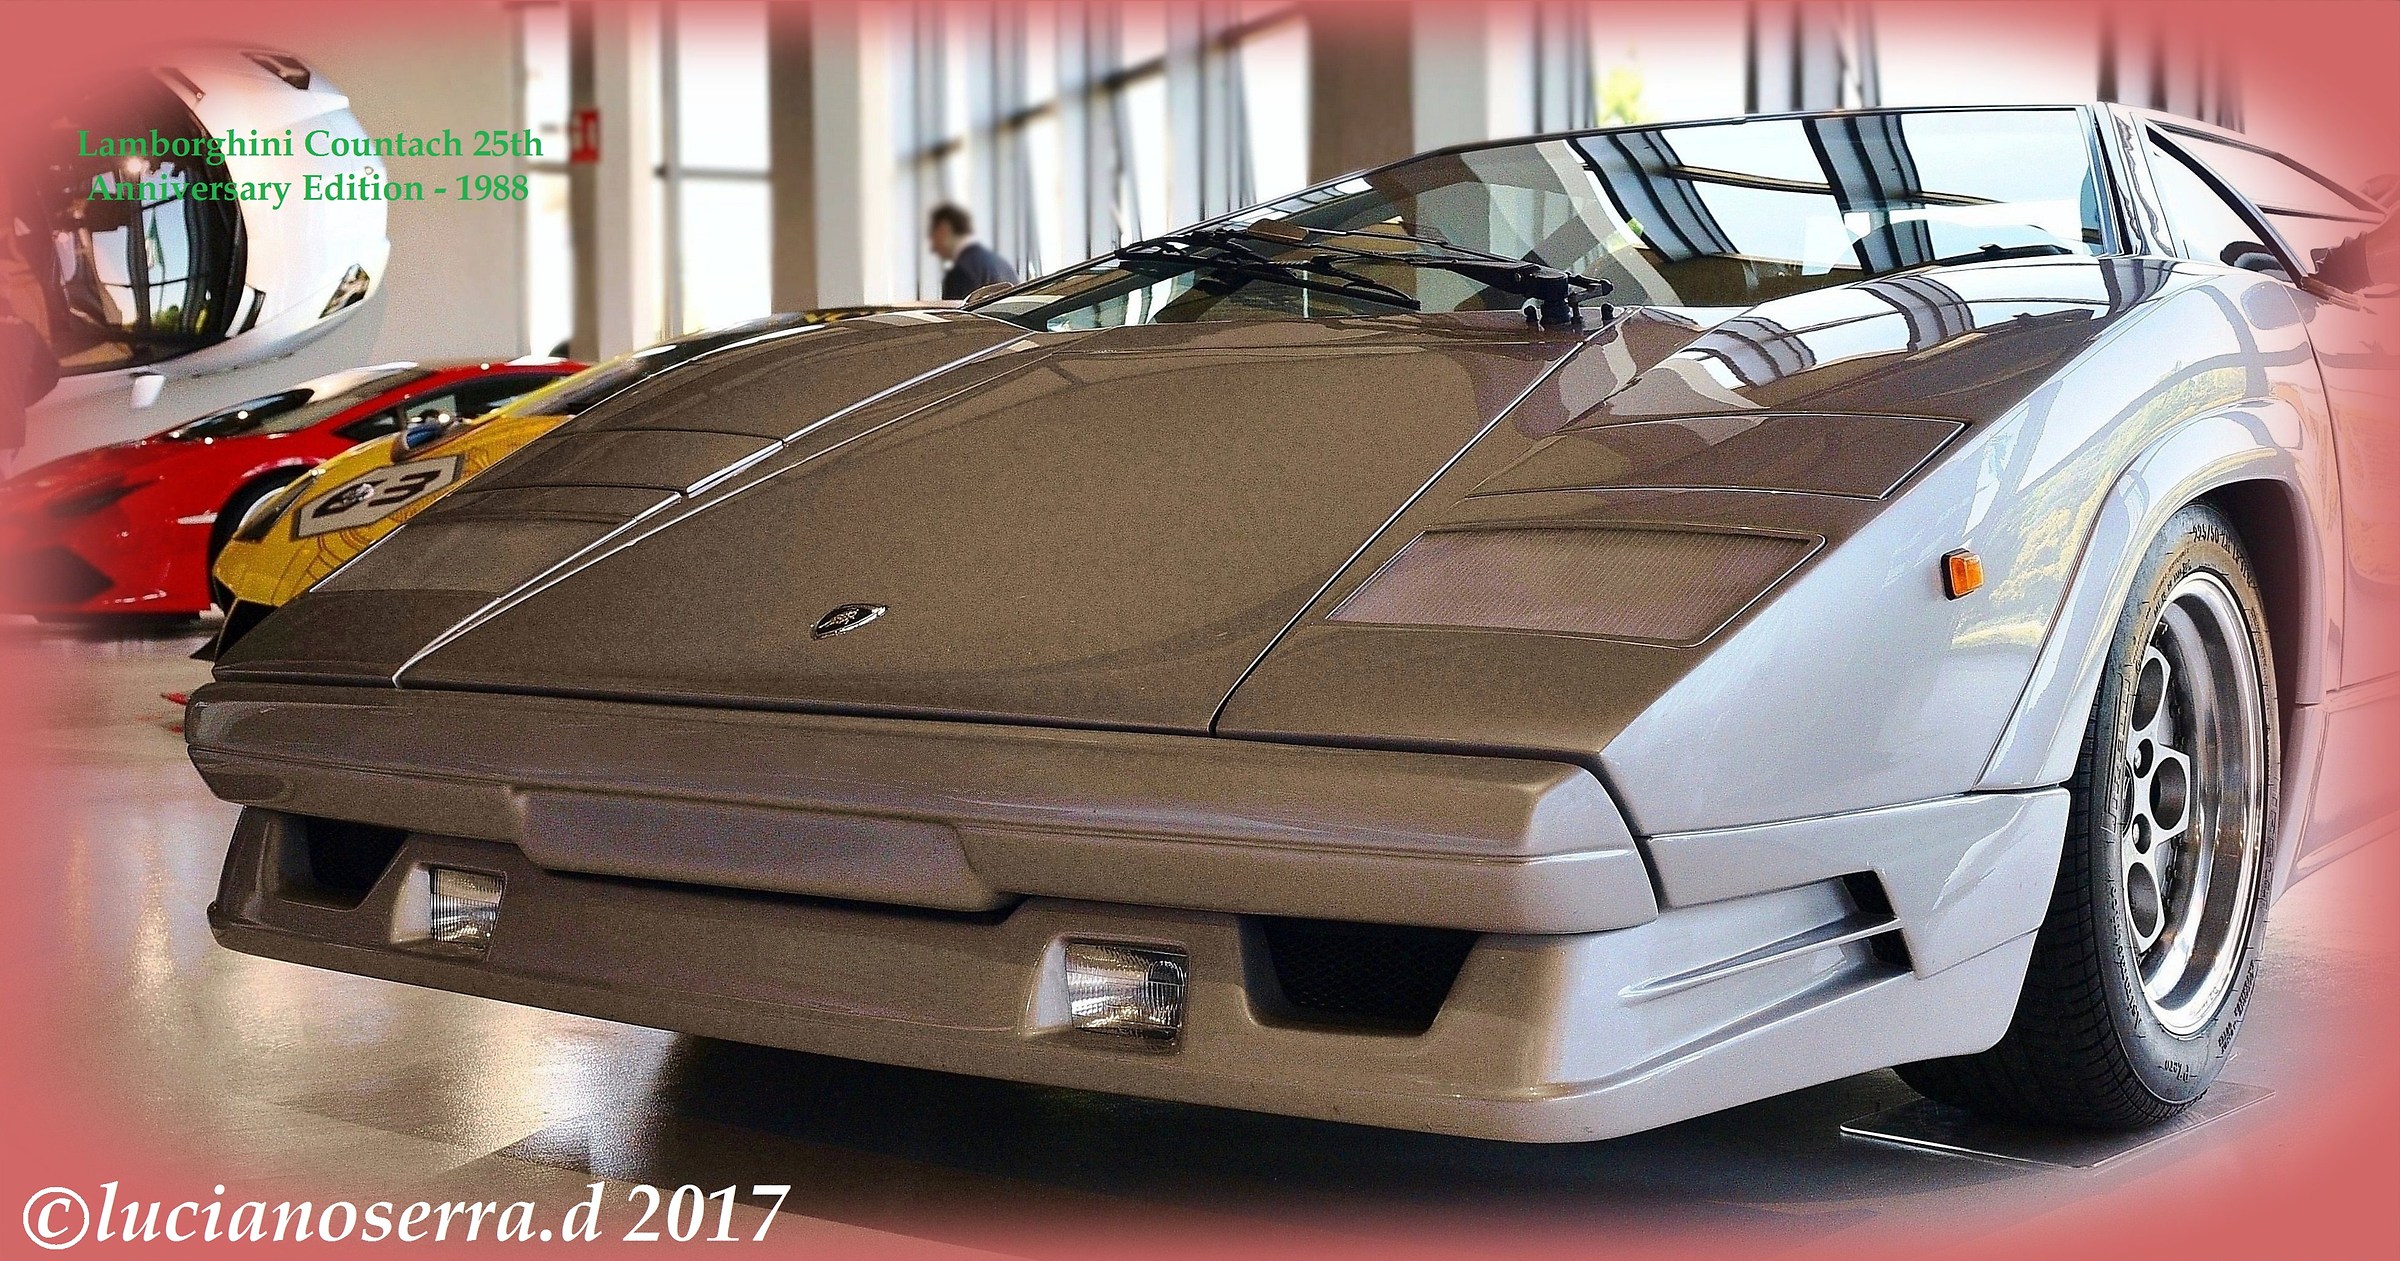 Lamborghini Countach 25th Anniversary Edition...